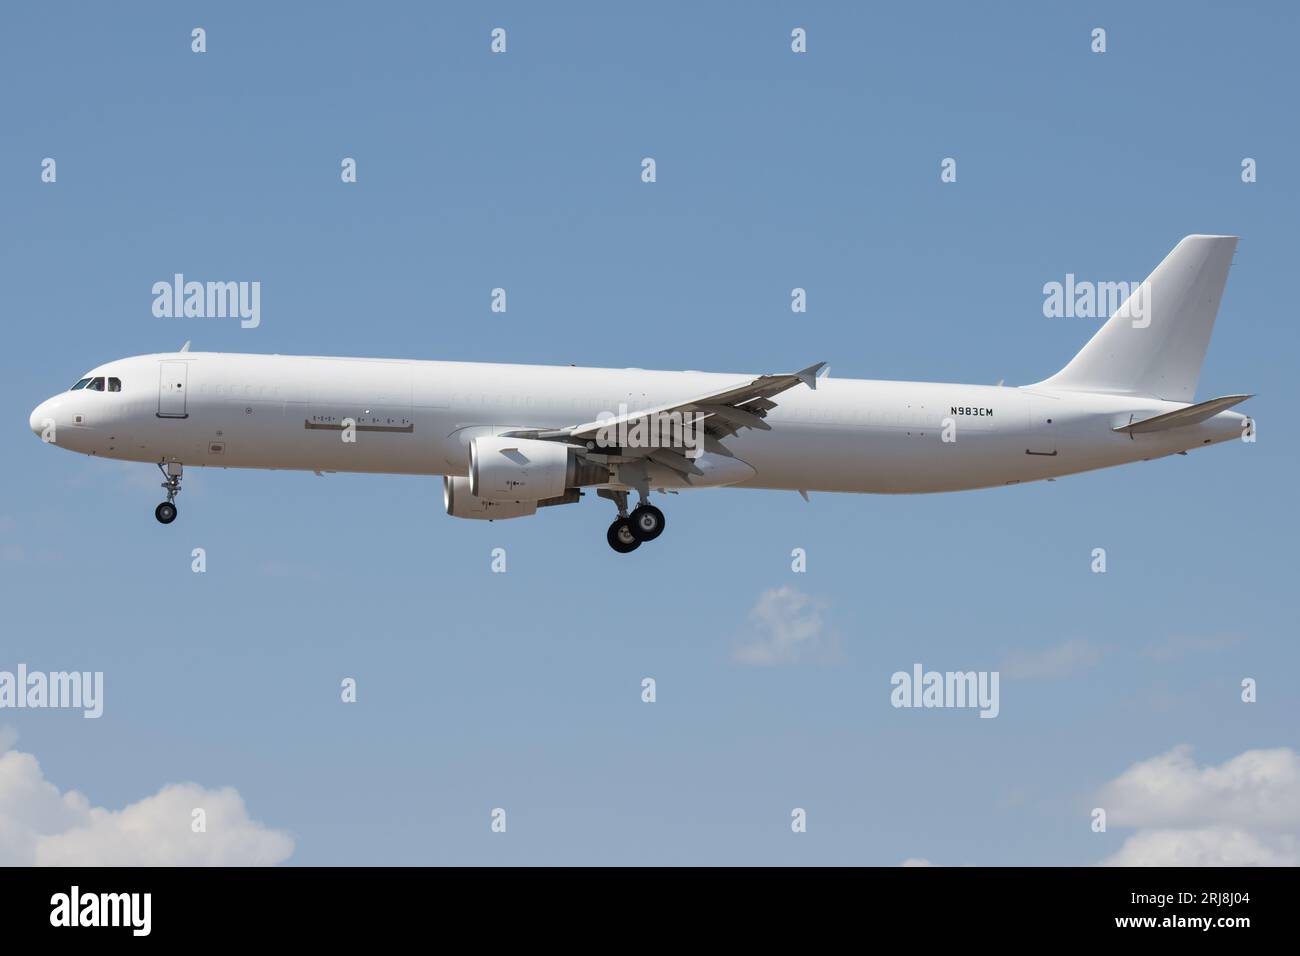 Un Airbus A321 cargo atterra all'aeroporto Sky Harbor di Phoenix. Questo aereo è stato convertito da un aereo di linea passeggeri. Foto Stock